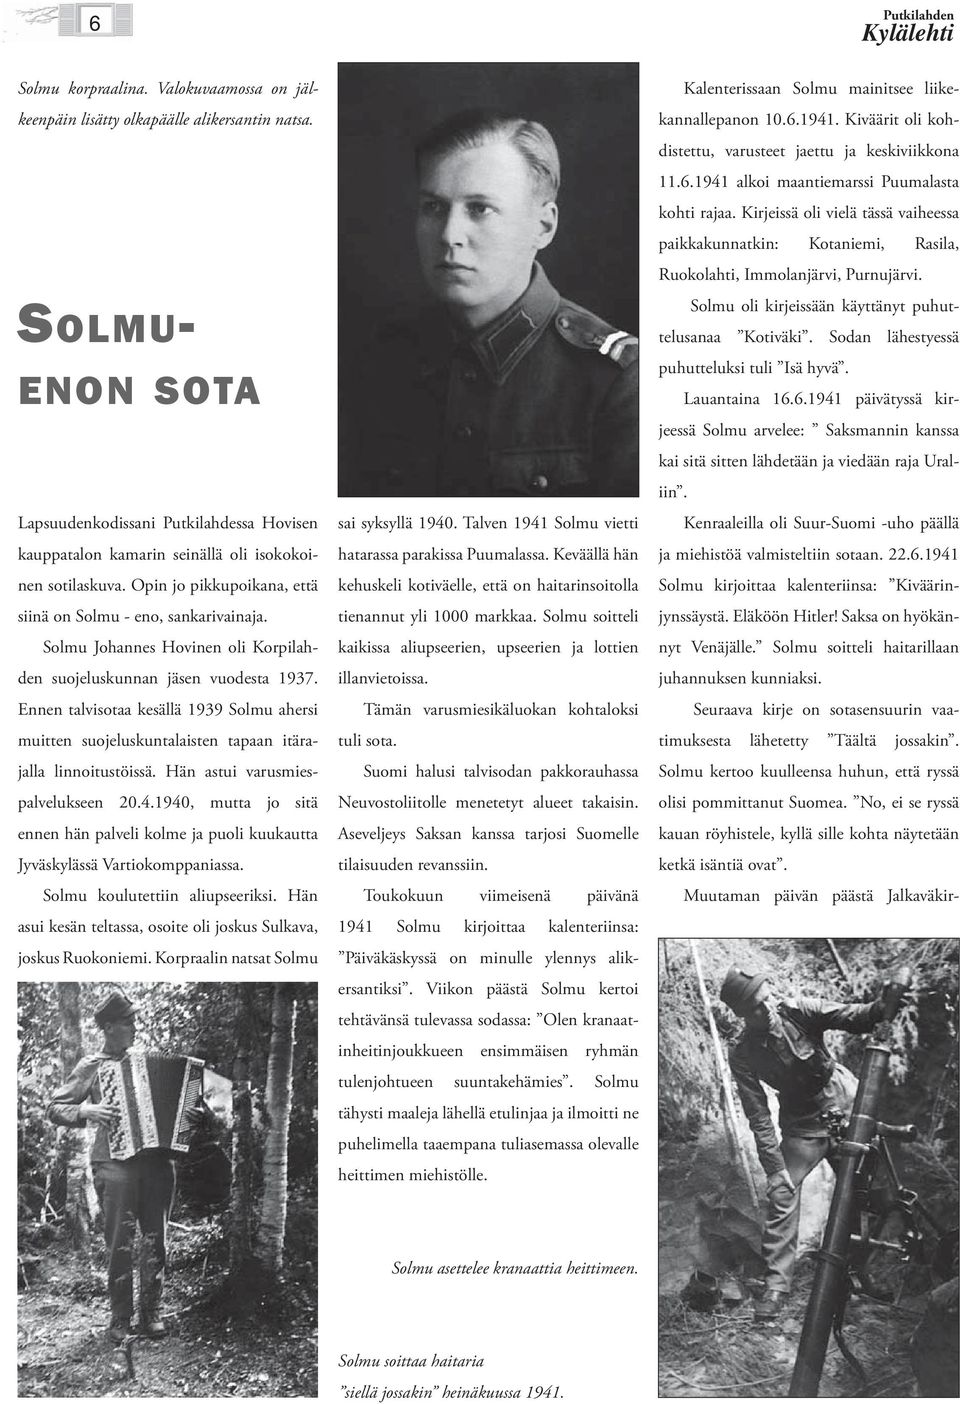 Solmu Johannes Hovinen oli Korpilahden suojeluskunnan jäsen vuodesta 1937. Ennen talvisotaa kesällä 1939 Solmu ahersi muitten suojeluskuntalaisten tapaan itärajalla linnoitustöissä.